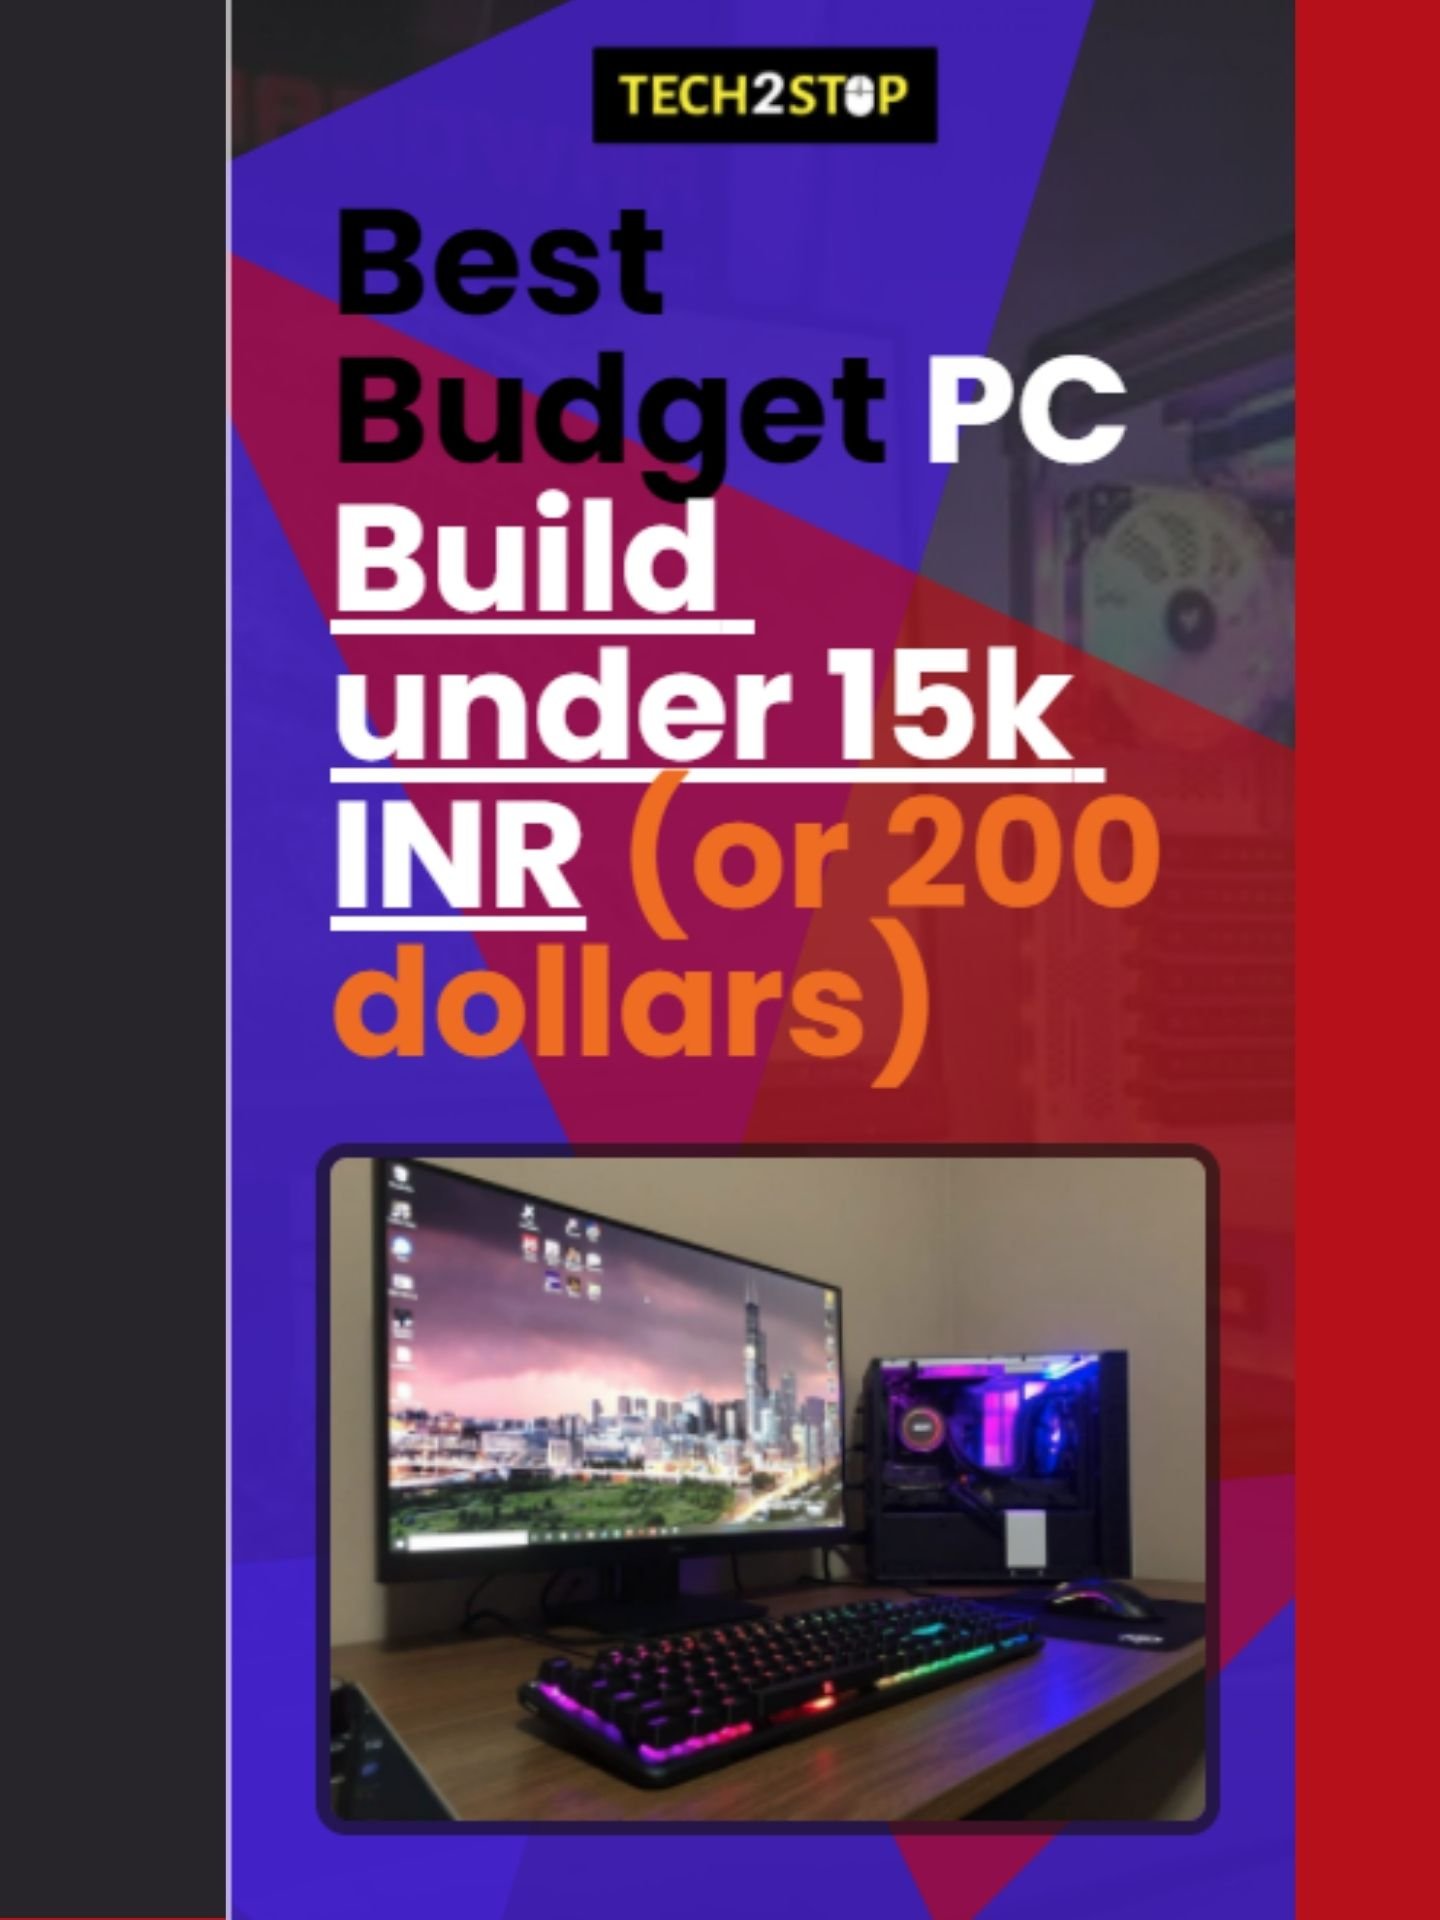 Best Budget PC Build under 15k INR